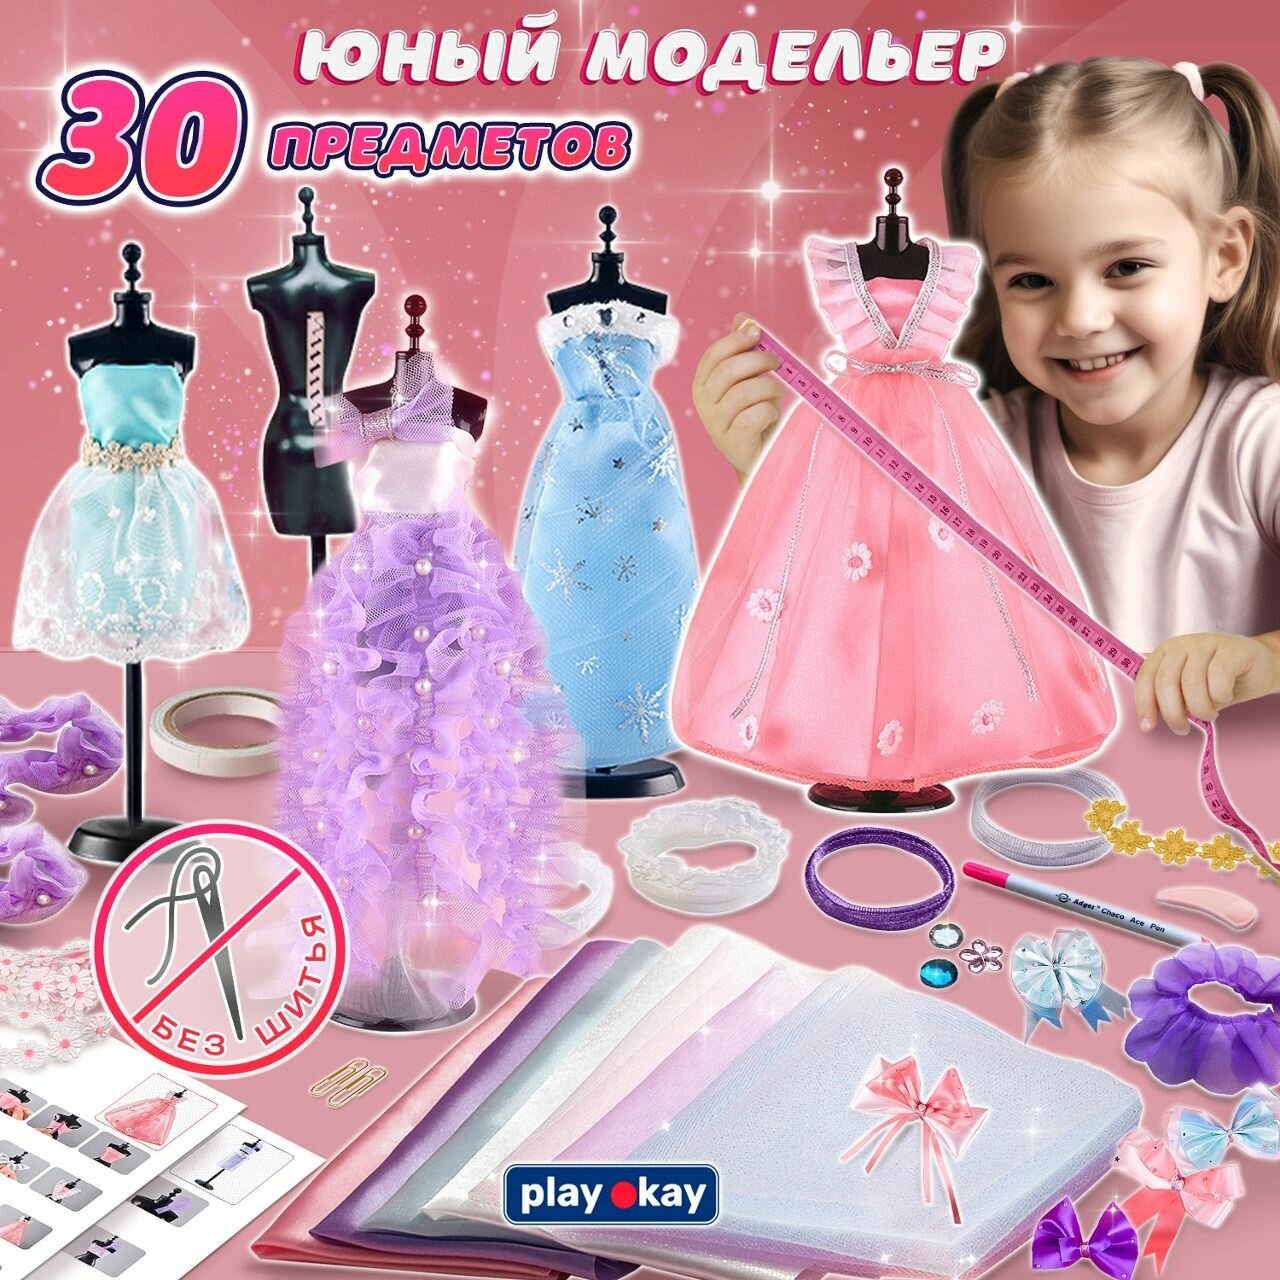 Набор для шитья кукольной одежды, рукоделия и творчества для девочек "Юный дизайнер и модельер" детский в подарок, 30 предметов